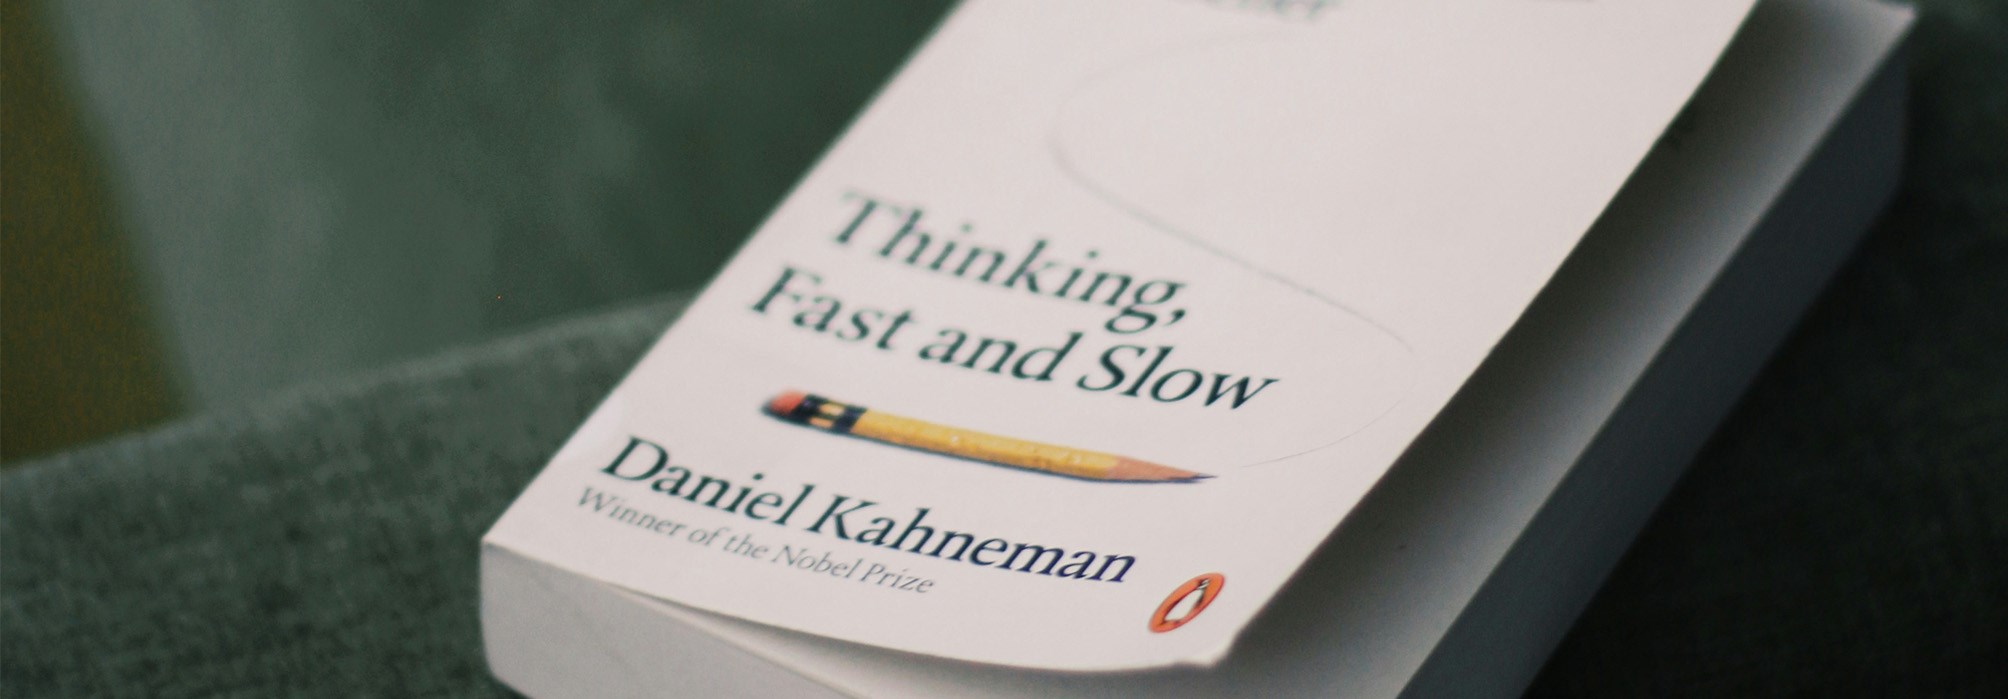 Daniel Kahneman bok - unsplash.com